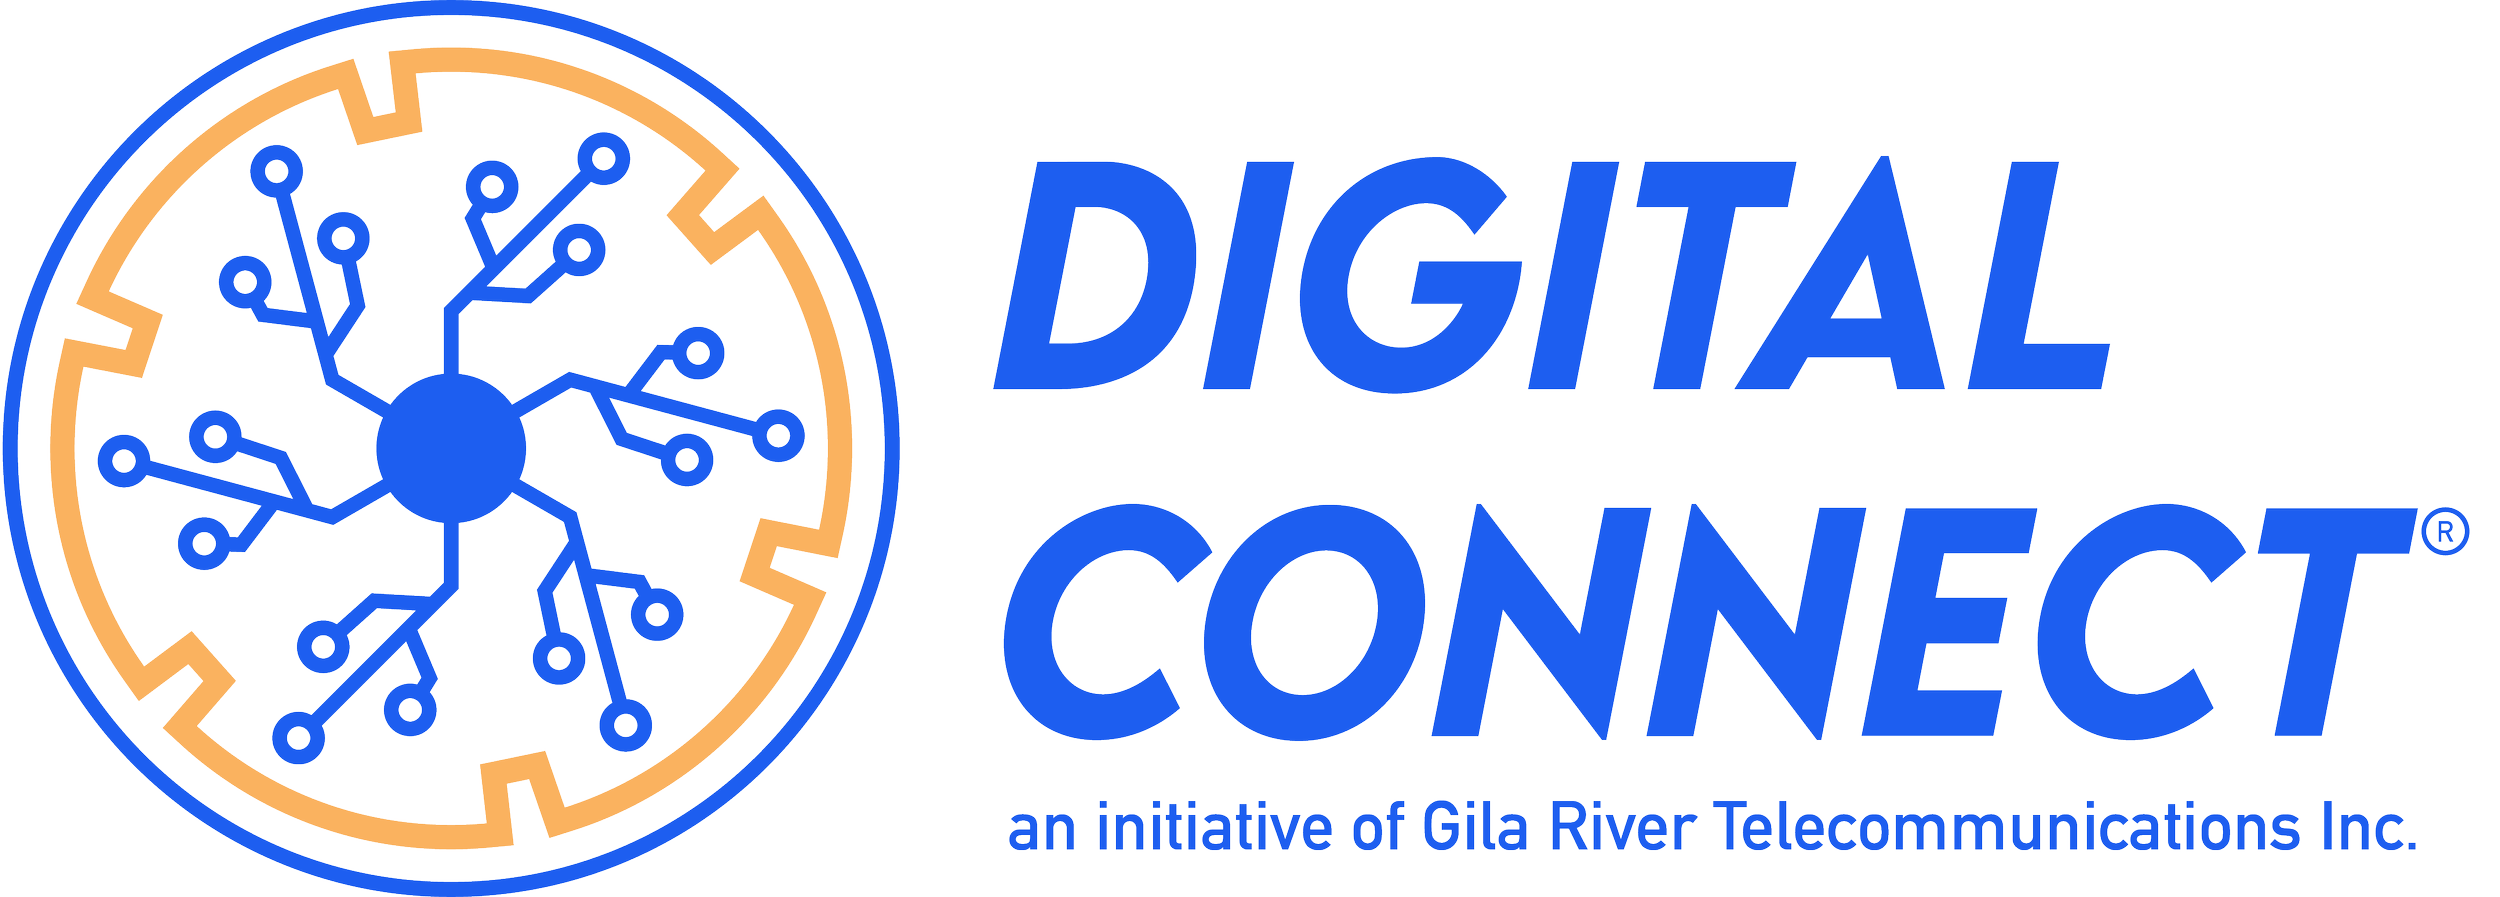 Digital Connect Initiative